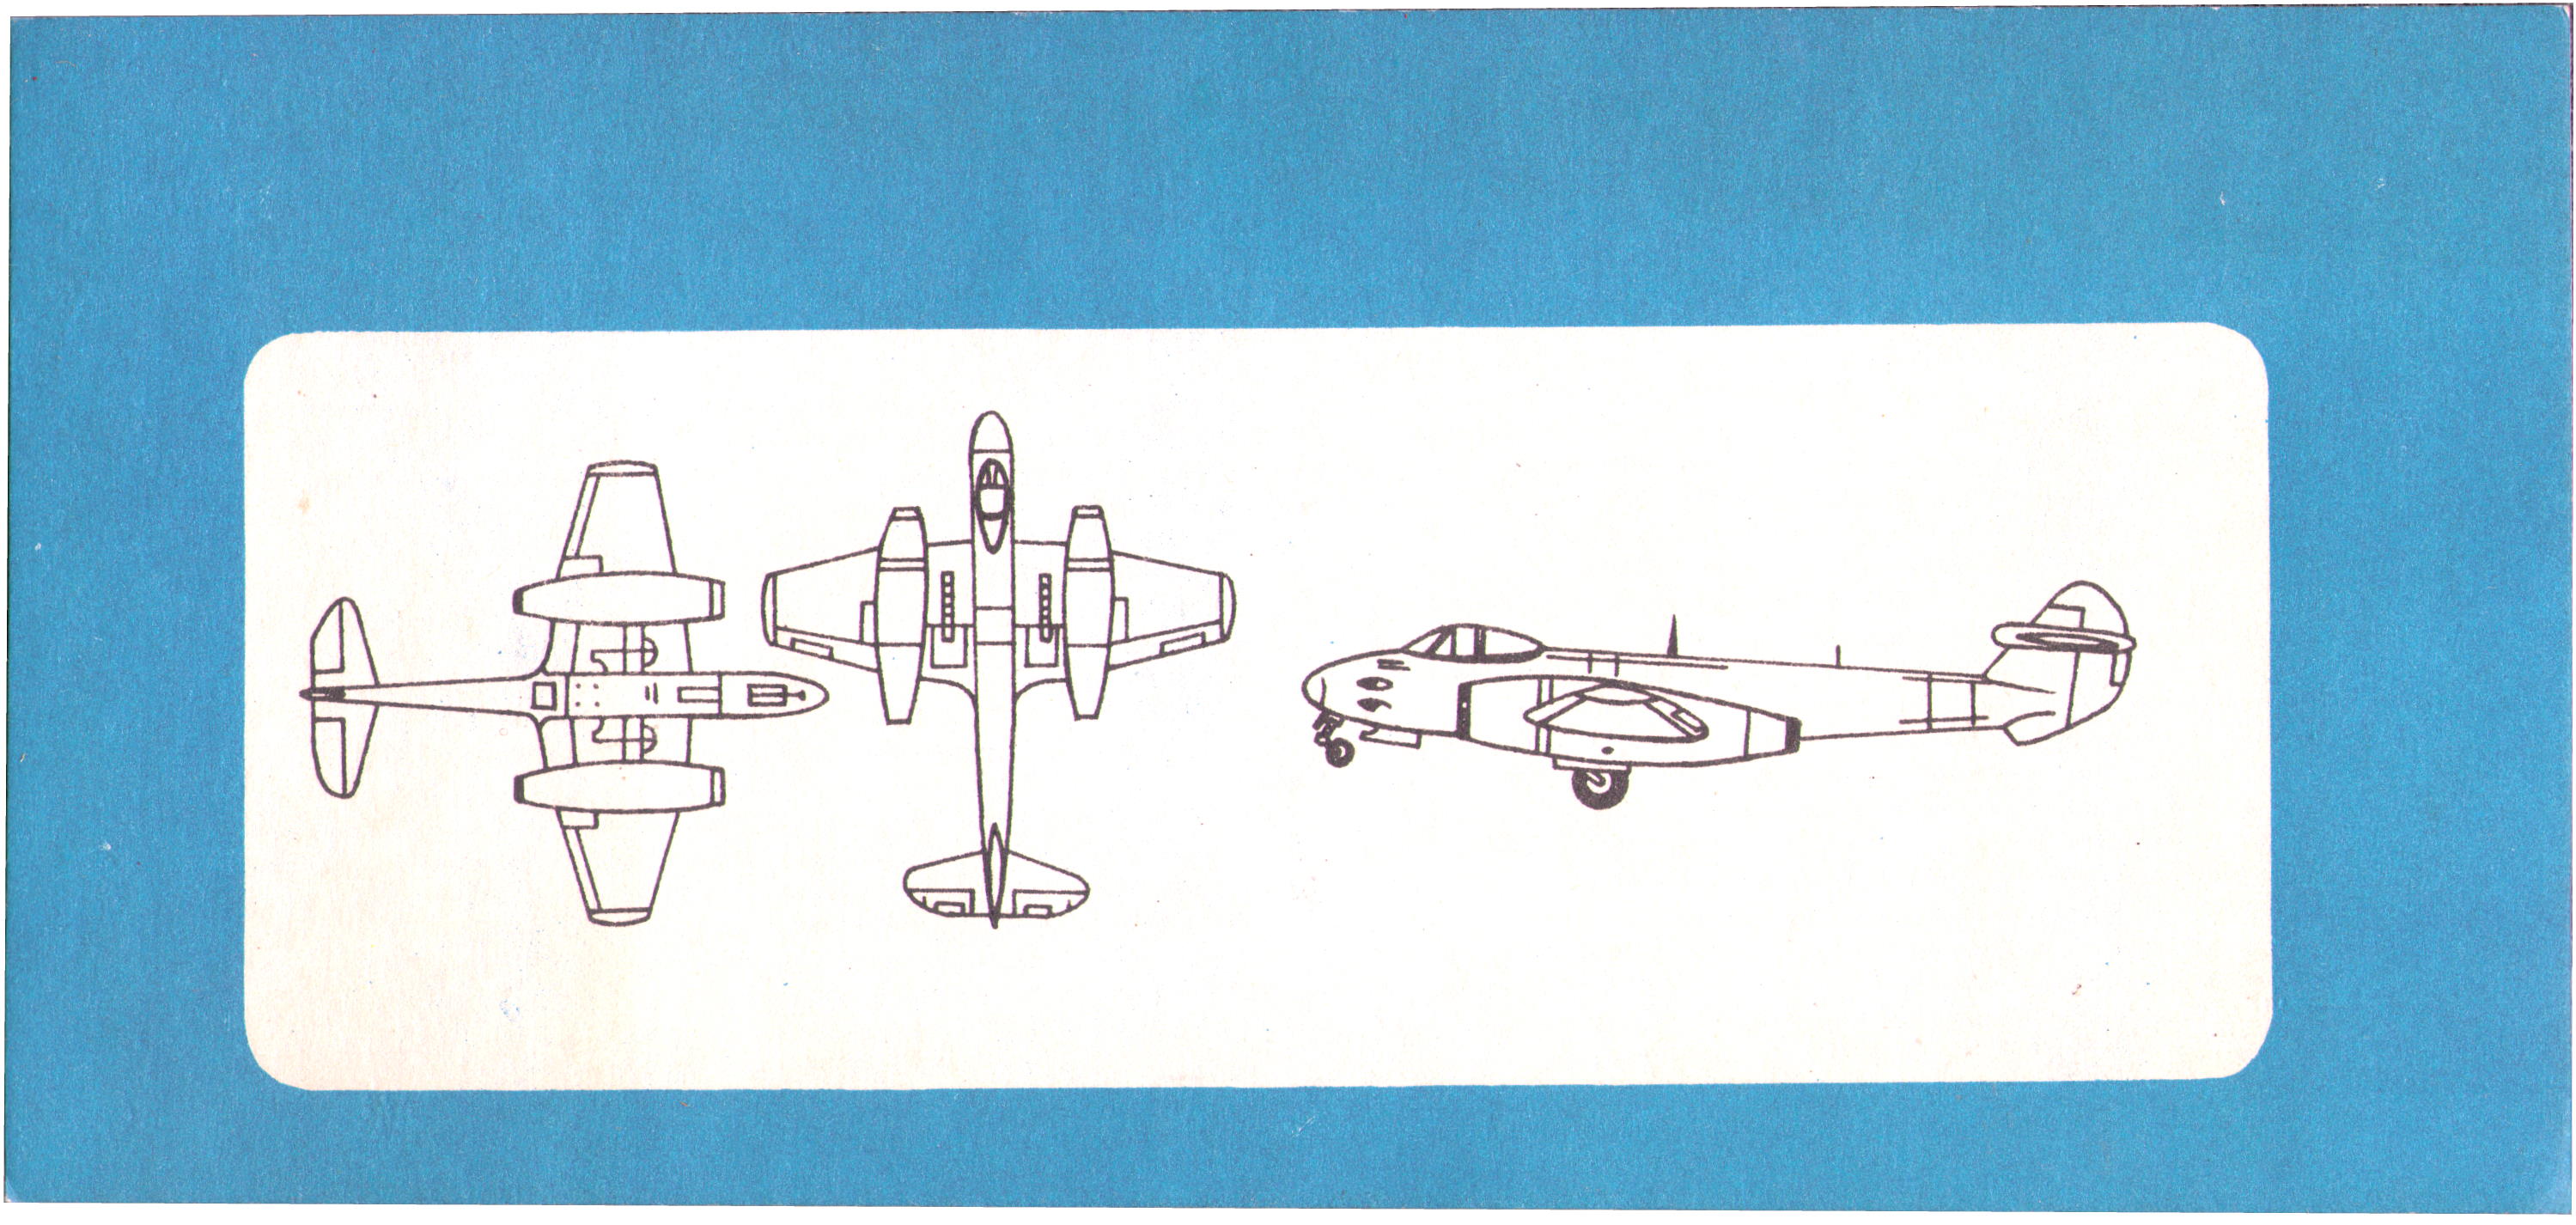 Лепесток Самолёт, индекс 200, Ташигрушка ТГ-56